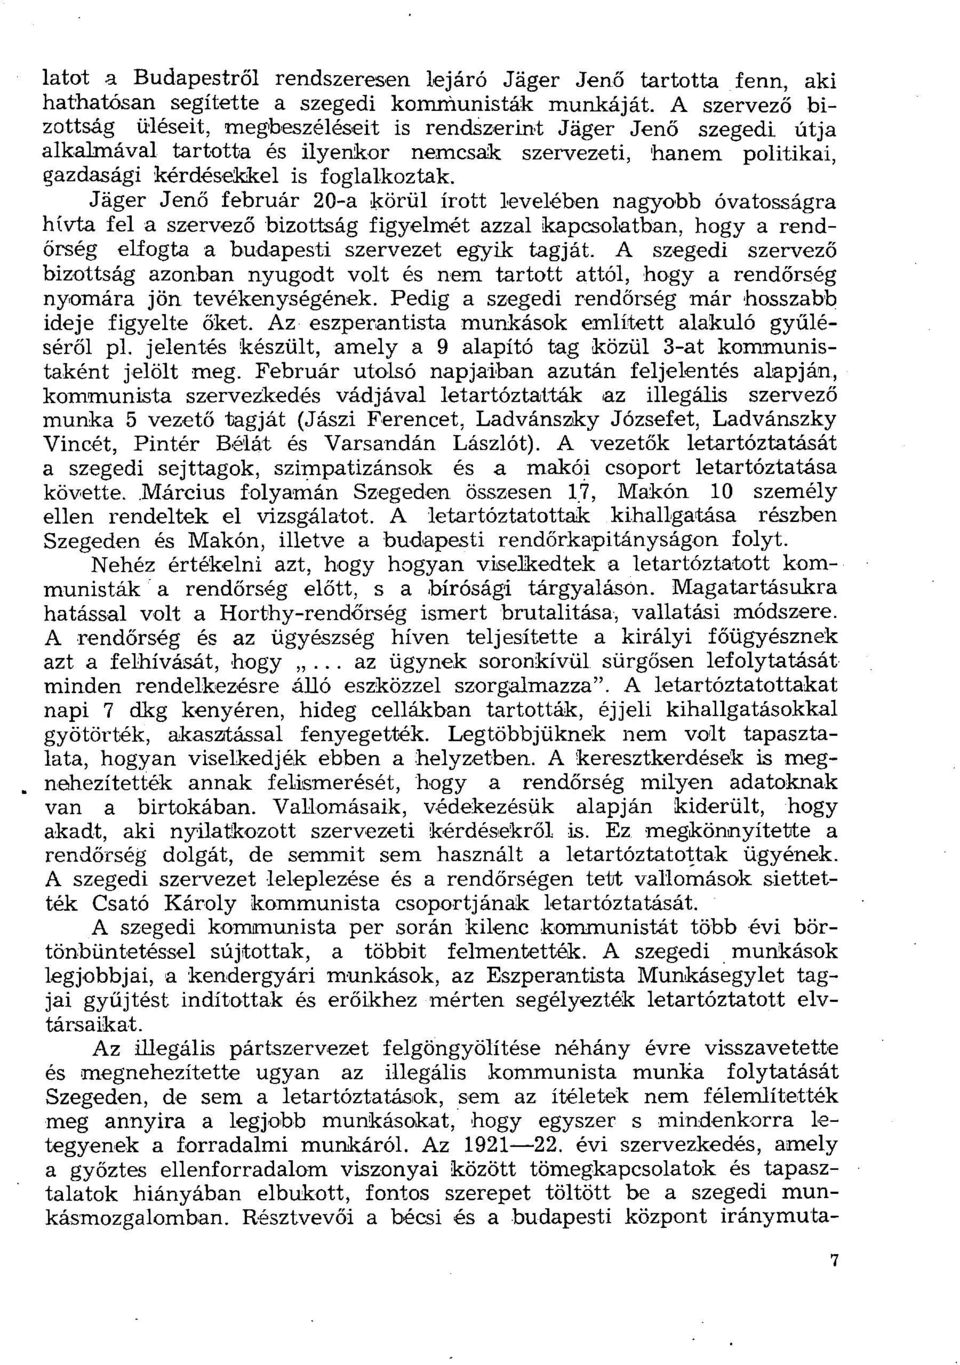 Jäger Jenő február 20-a körül írott levelében nagyobb óvatosságra hívta fel a szervező bizottság figyelmét azzal kapcsolatban, hogy a rendőrség elfogta a budapesti szervezet egyik tagját.